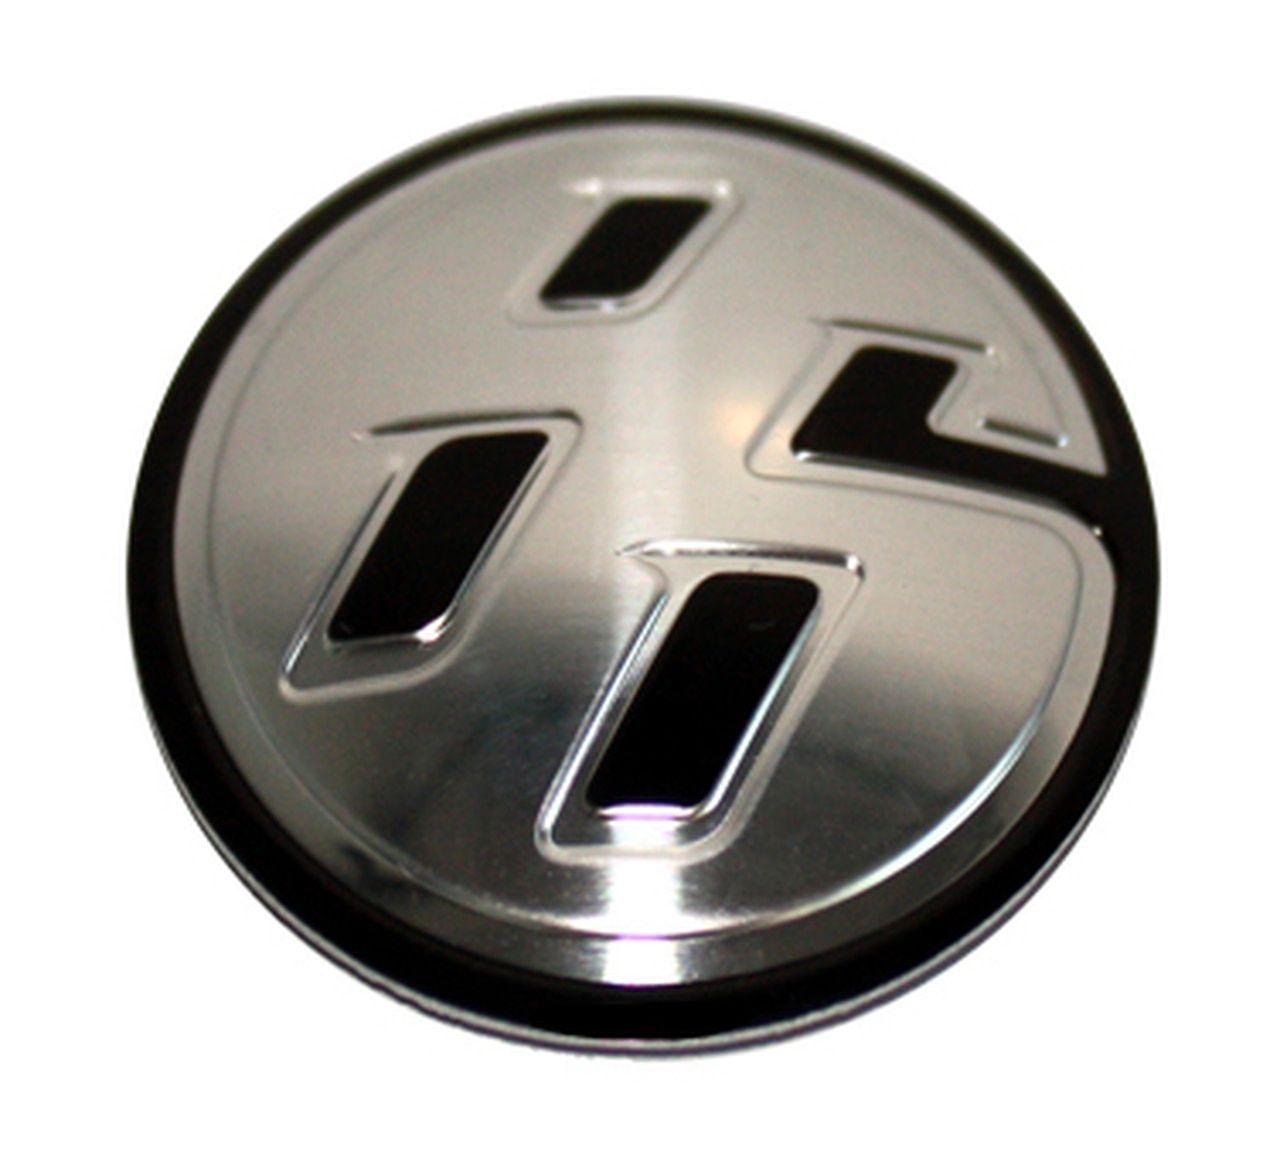 GT86 Logo - 86 Accent Emblem 30mm